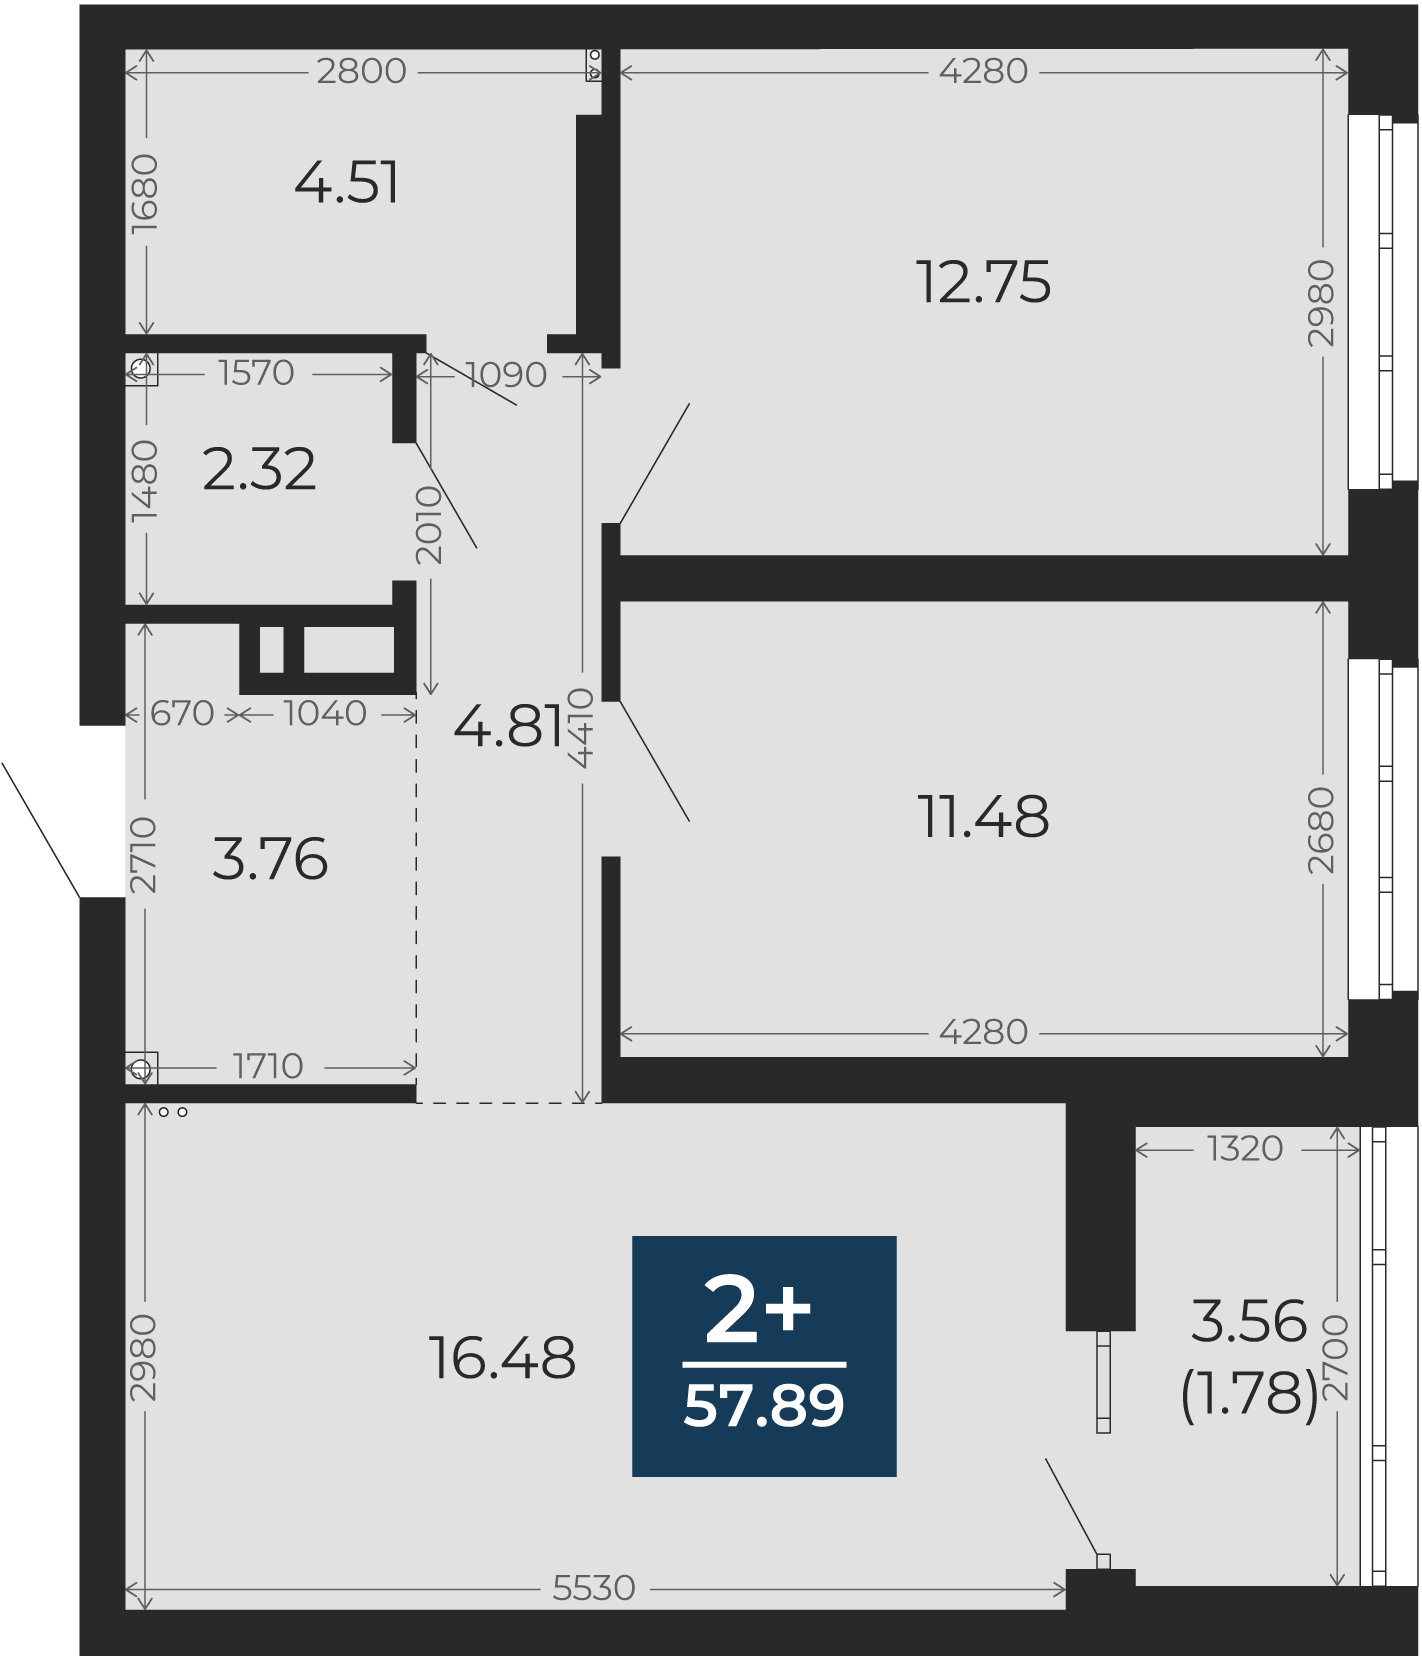 Квартира № 271, 2-комнатная, 57.89 кв. м, 2 этаж